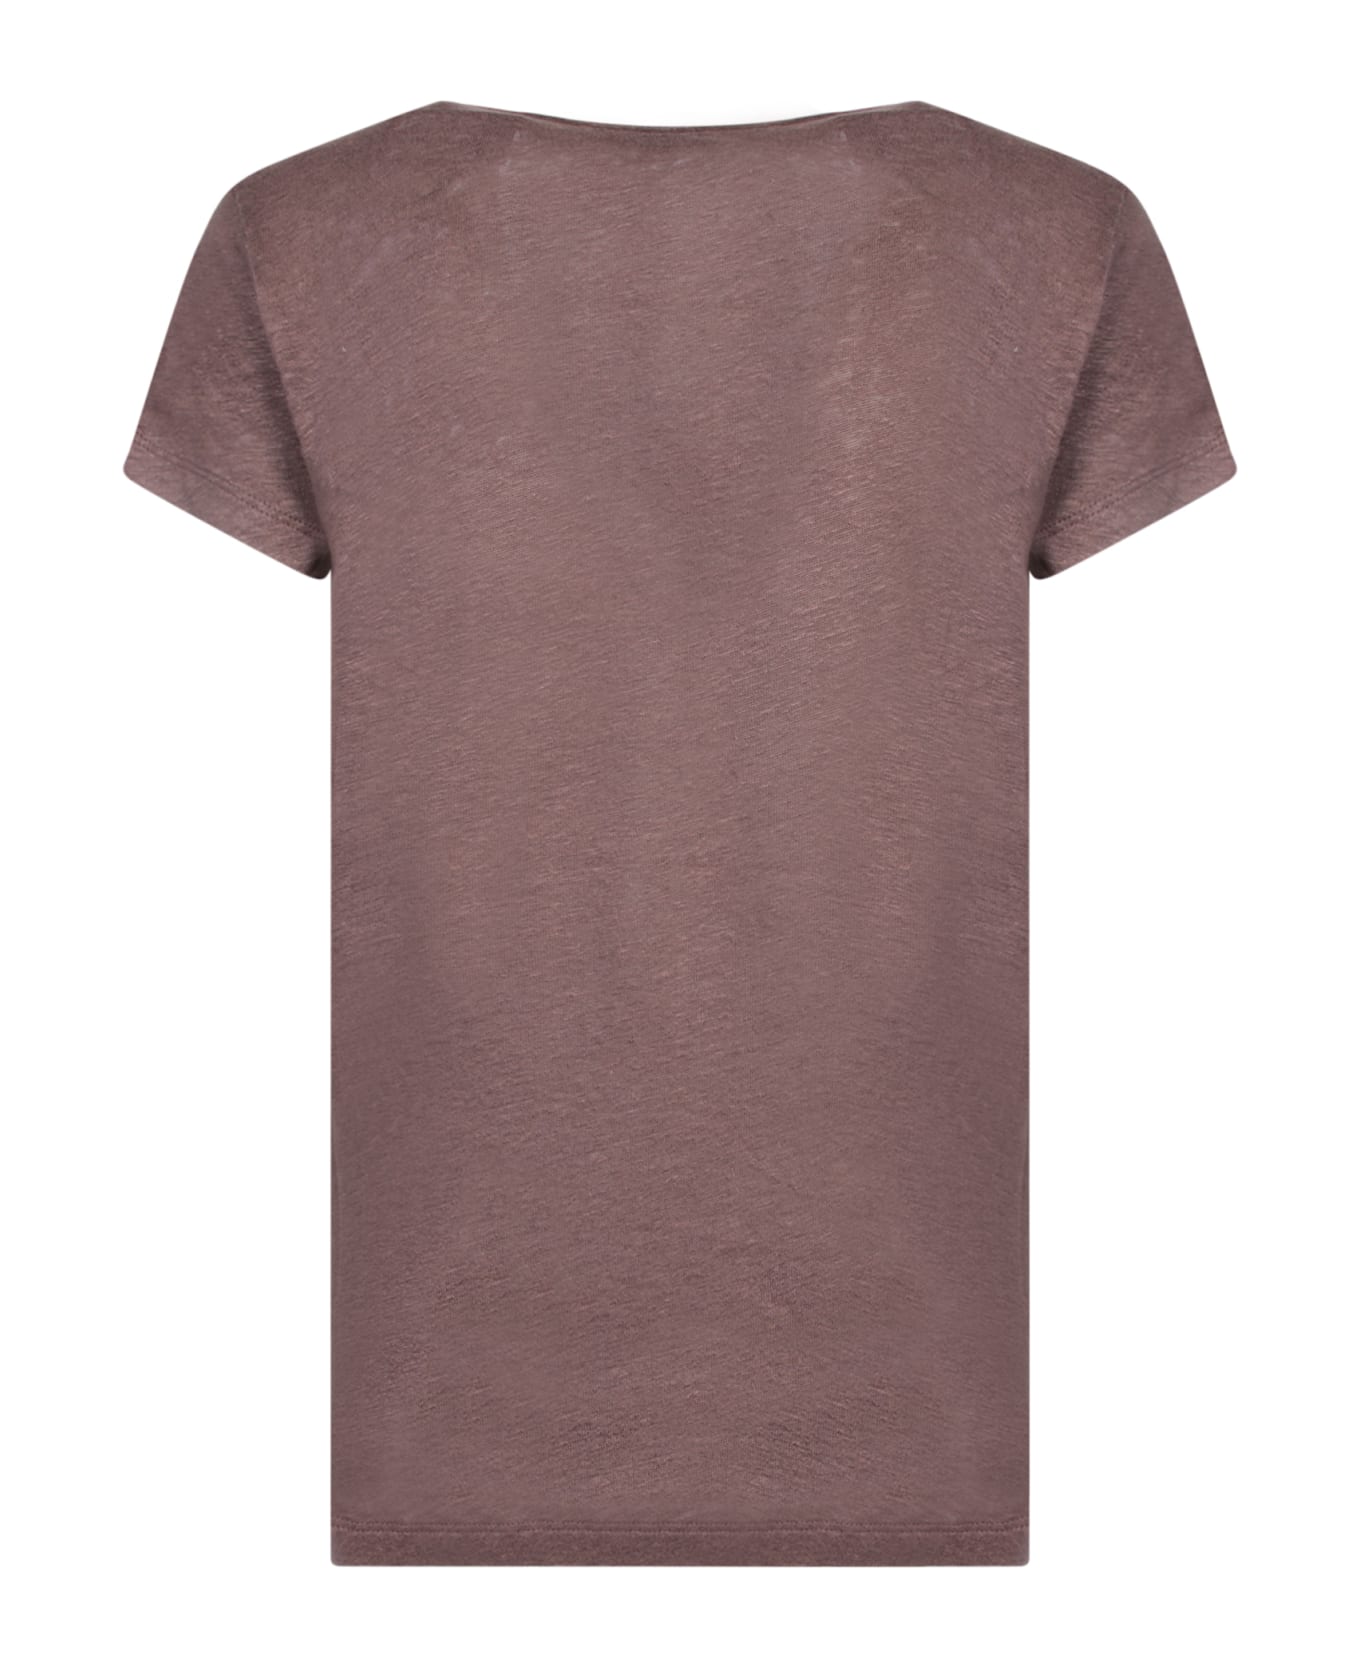 IRO Linen T-shirt In Brown - Brown Tシャツ